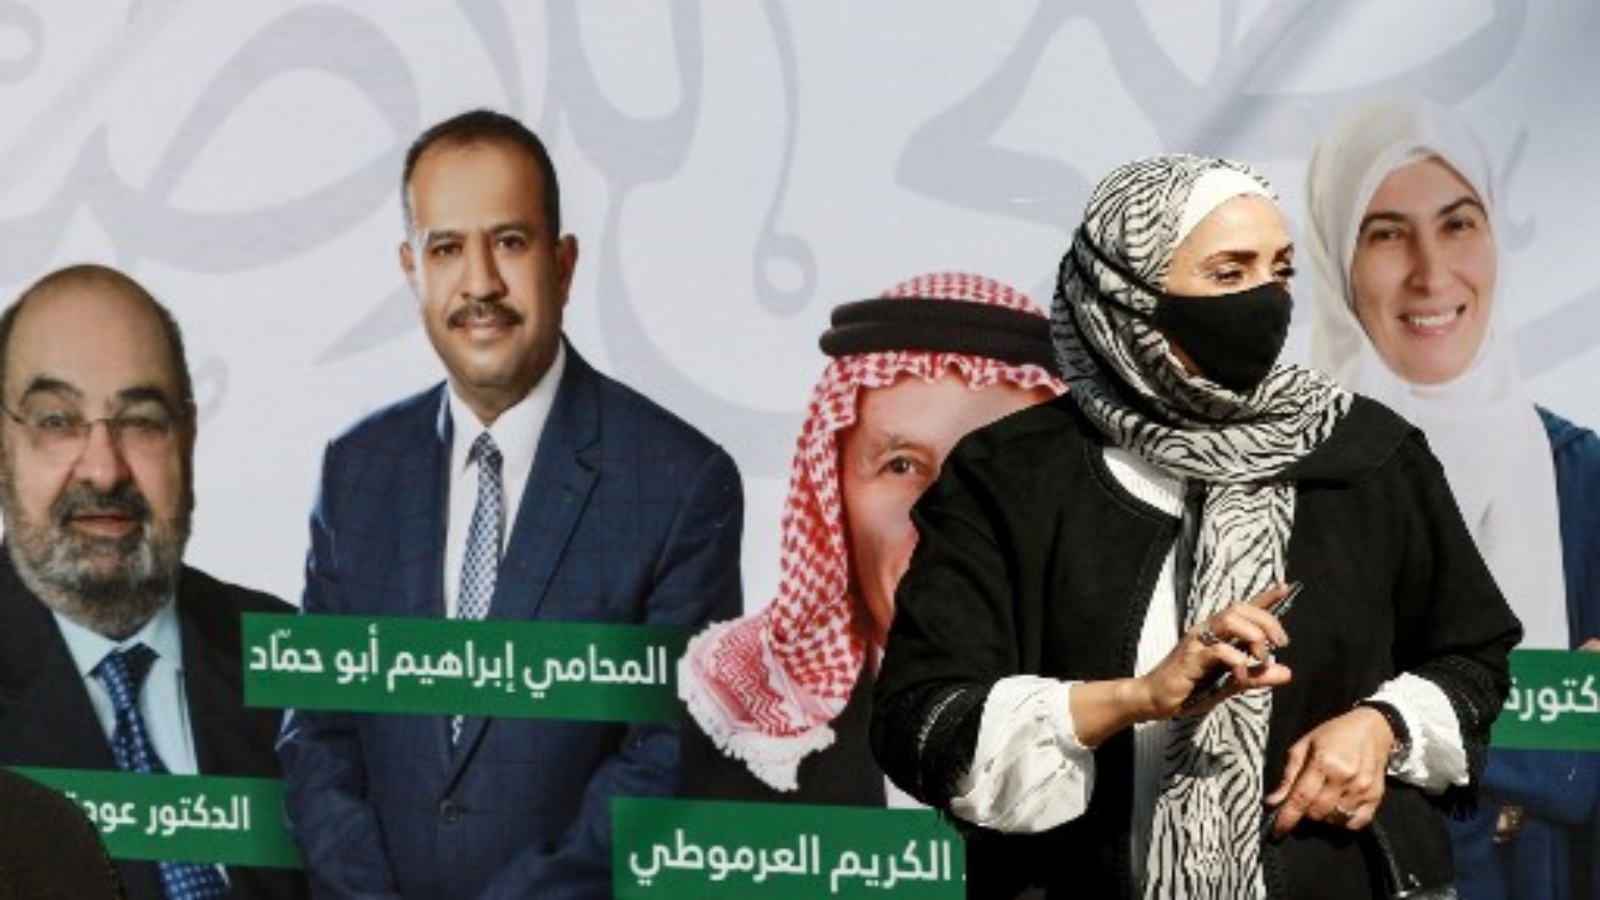 امرأة ترتدي أقنعة بسبب جائحة فيروس كورونا COVID-19 ، تقف بجانب ملصق حملة يظهر مرشحي قائمة انتخابية في العاصمة الأردنية عمان في 10 نوفمبر 2020 ، خلال الانتخابات العامة لعام 2020